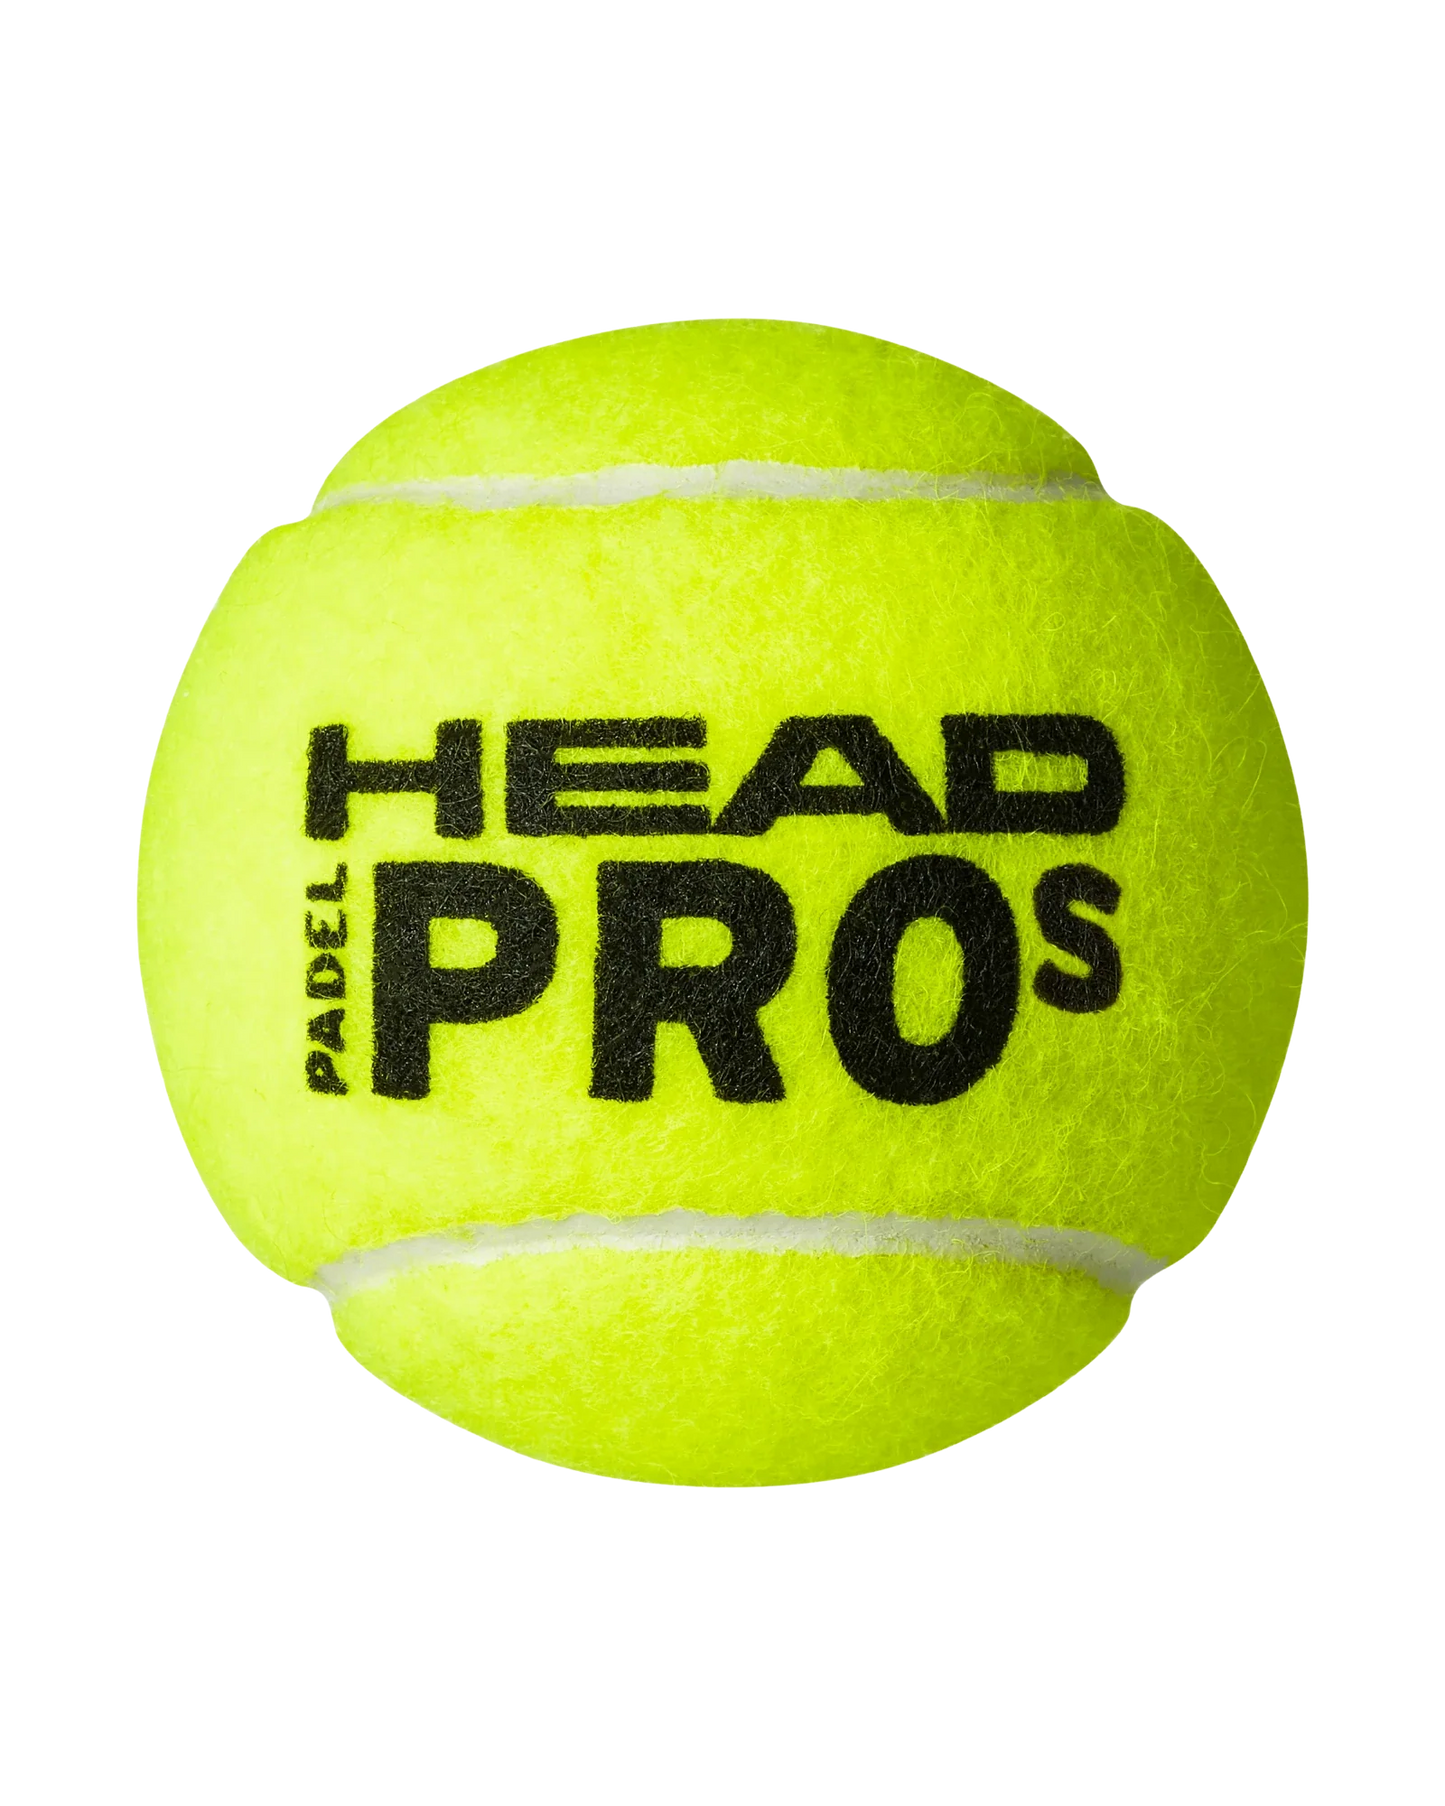 Head Padel Pro S - Padel Balls